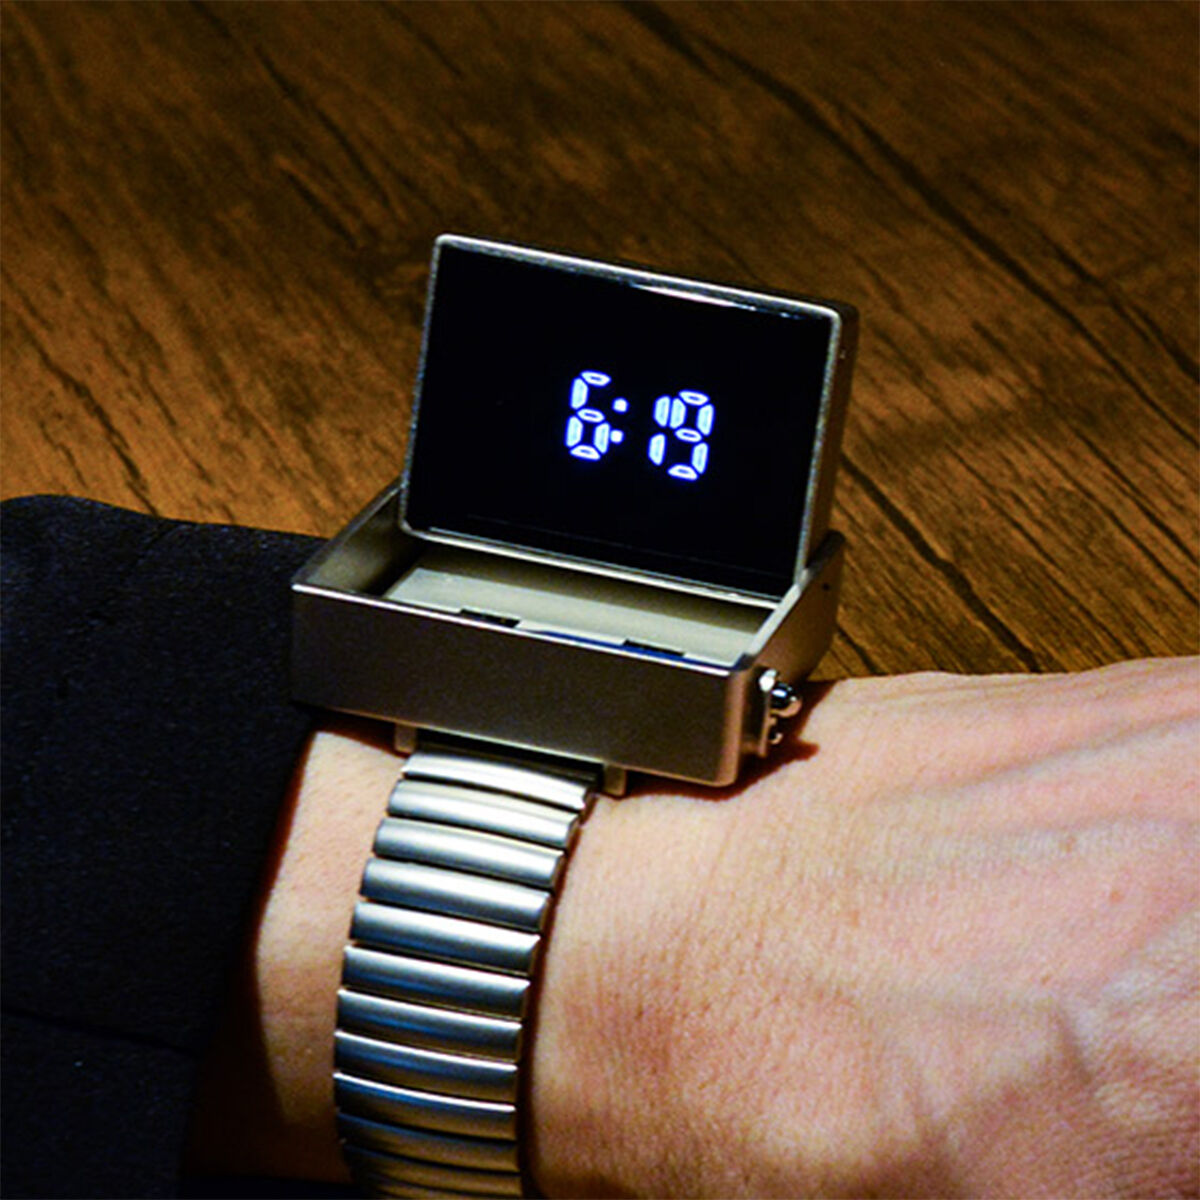 【限定販売】ウルトラセブン『ビデオシーバーデジタルウォッチ』時計-001